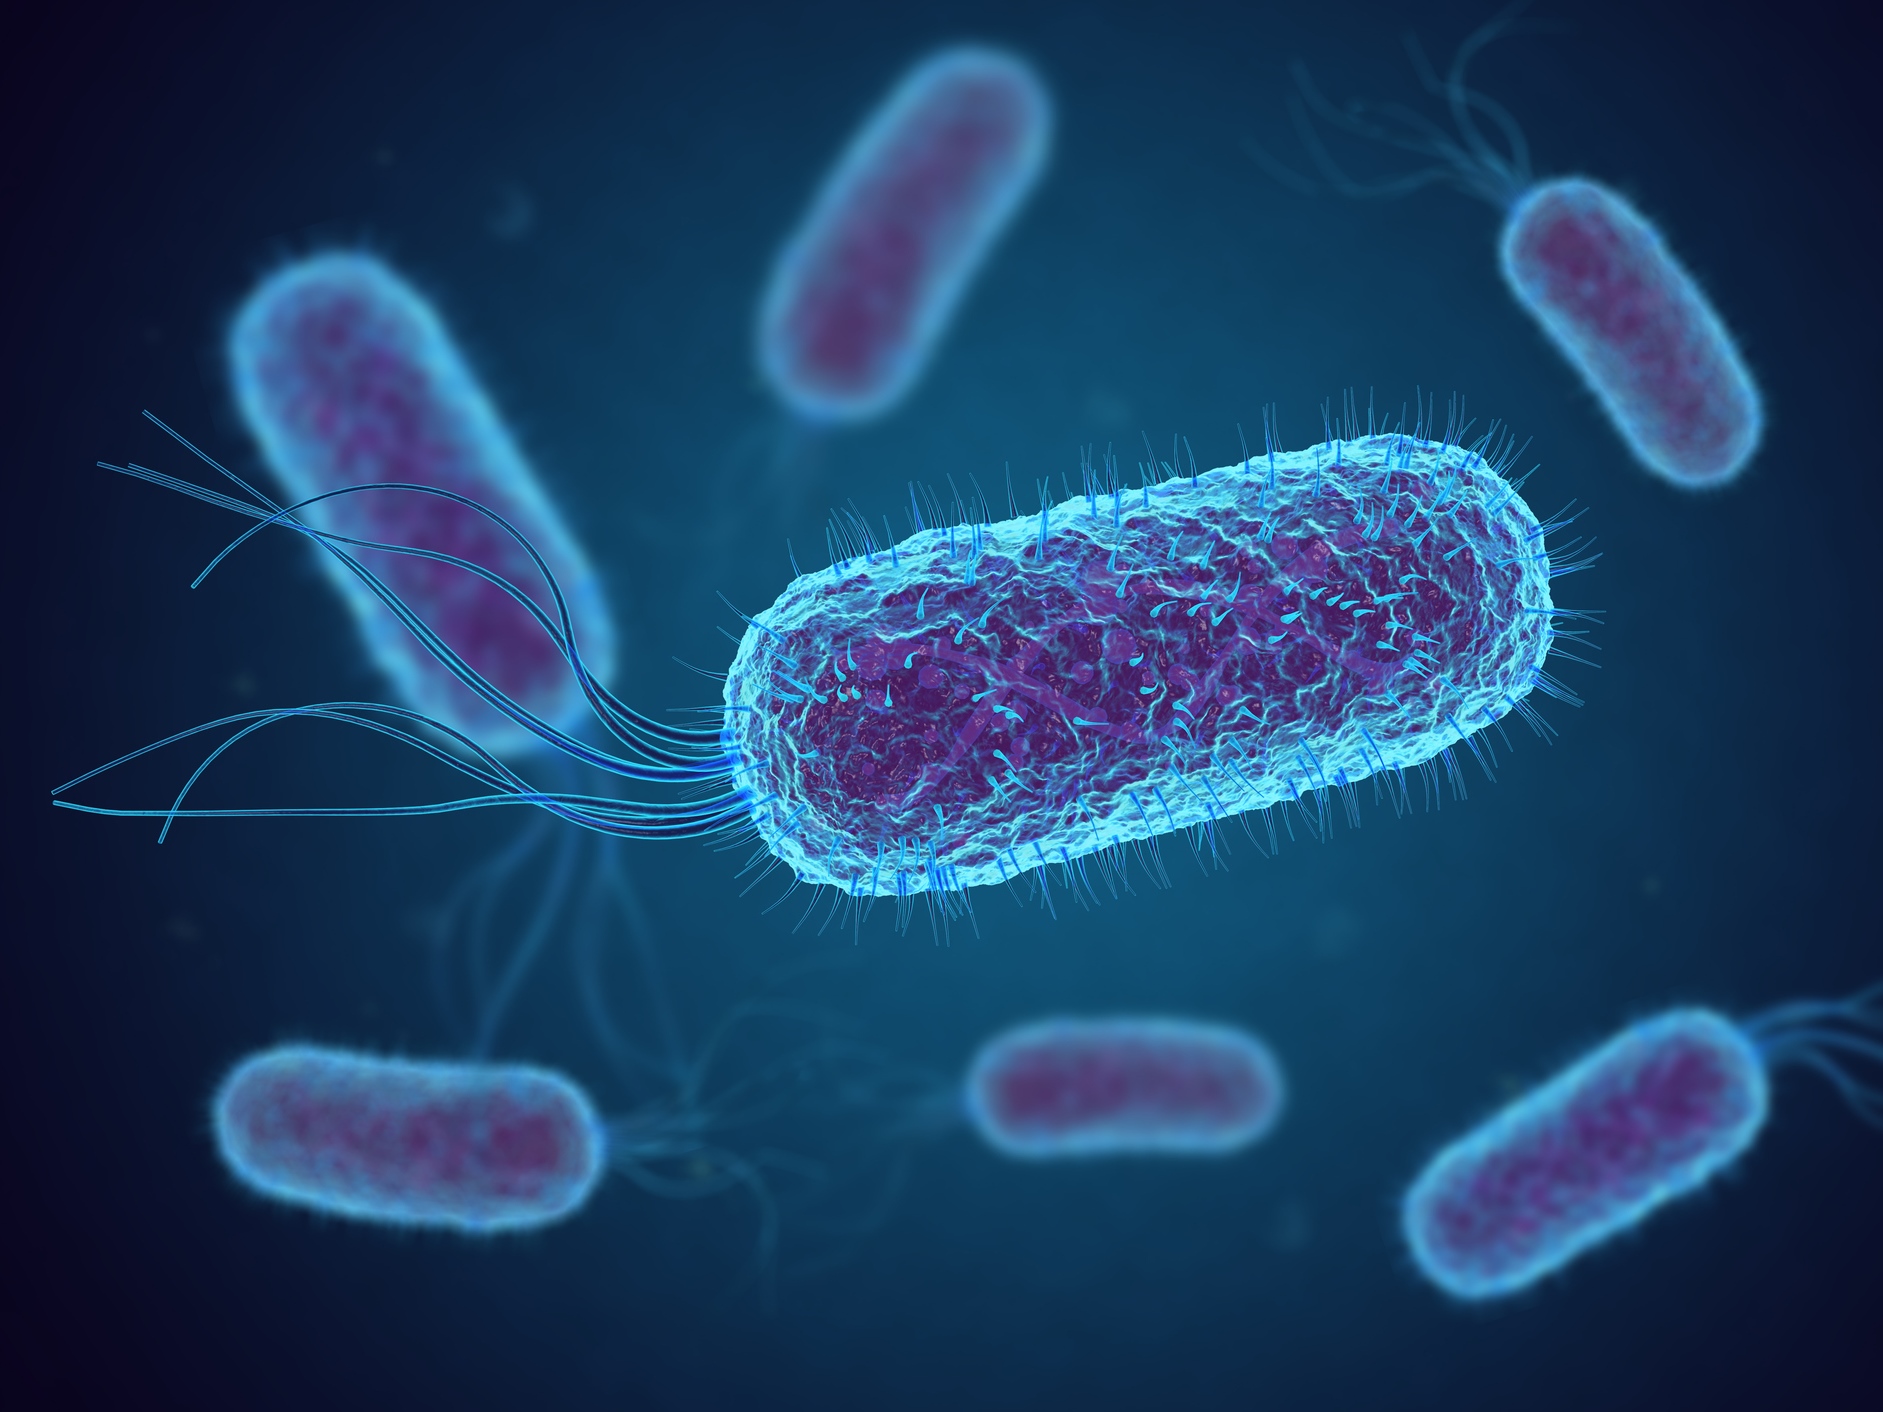 bakterien-als-co2-fresser-forscher-zwingen-e-coli-zur-umstellung-auf